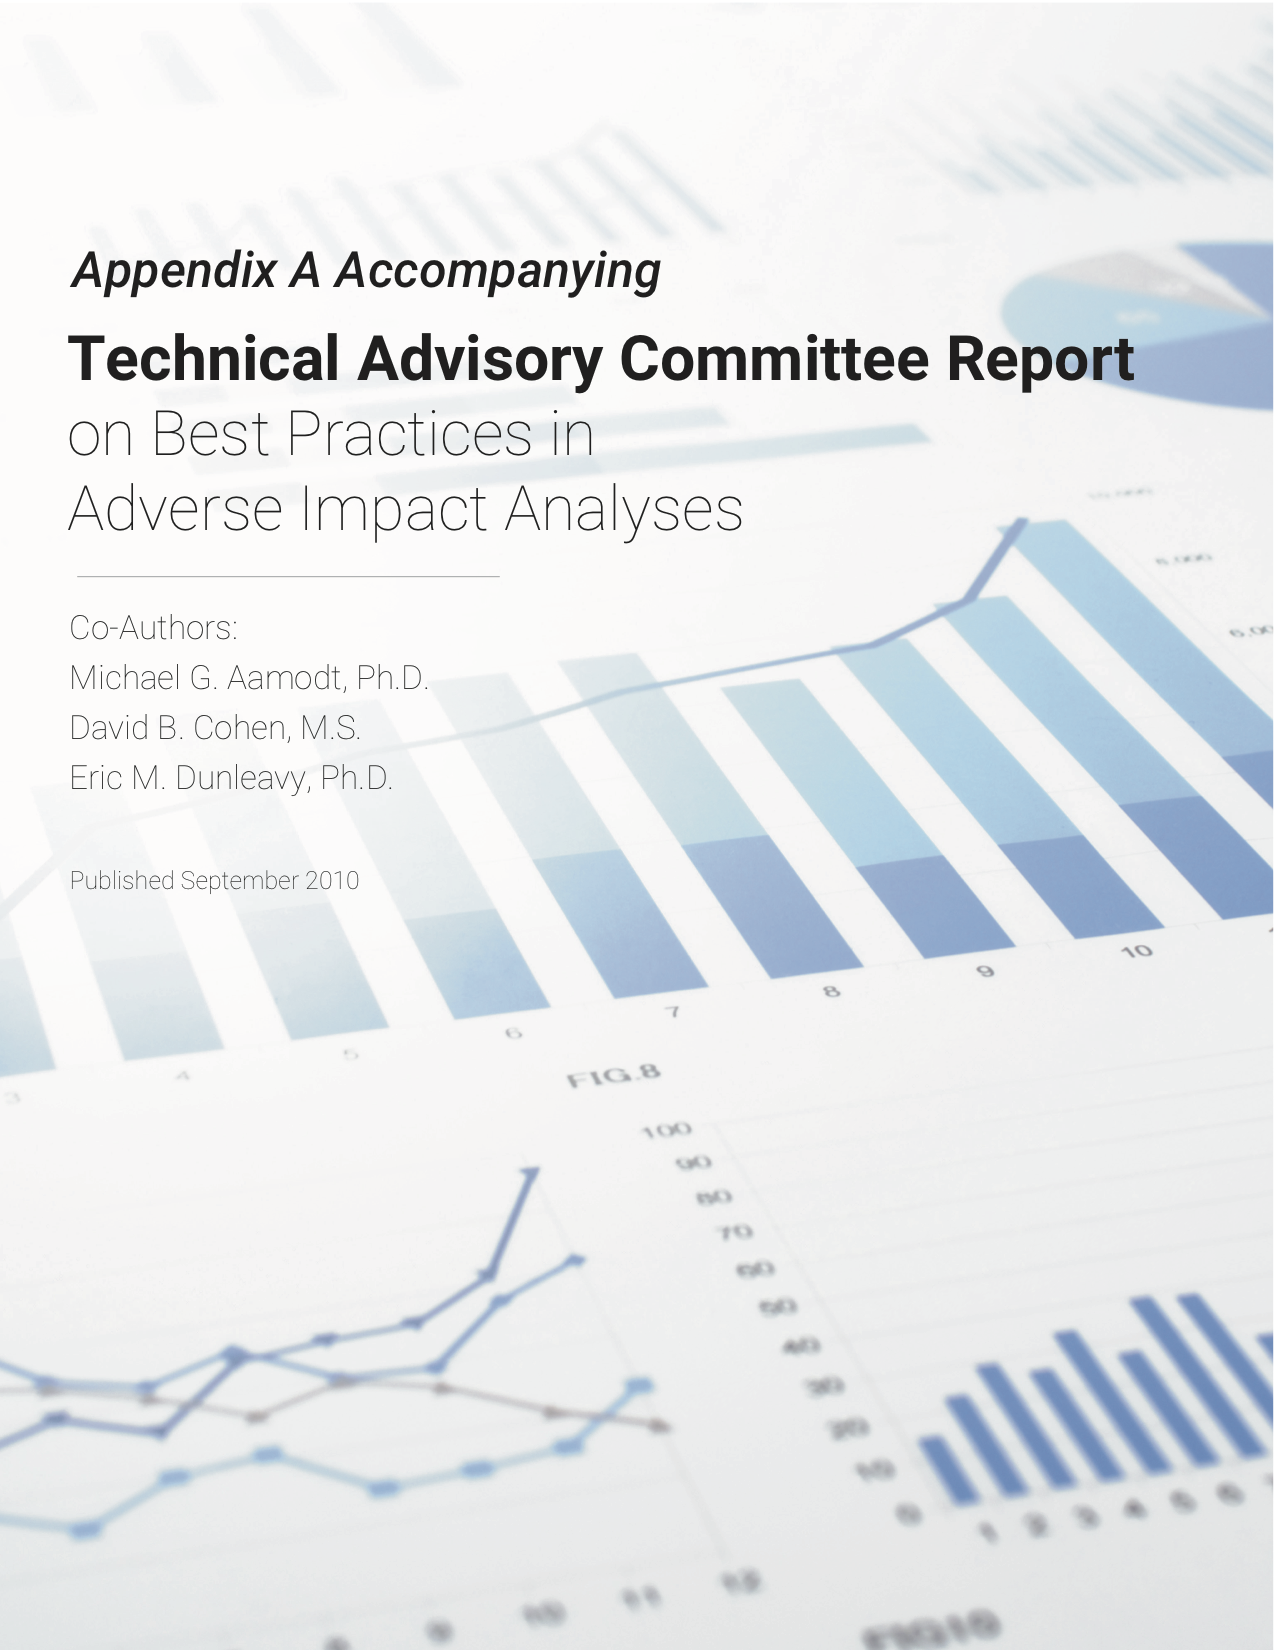 Appendix A TAC report